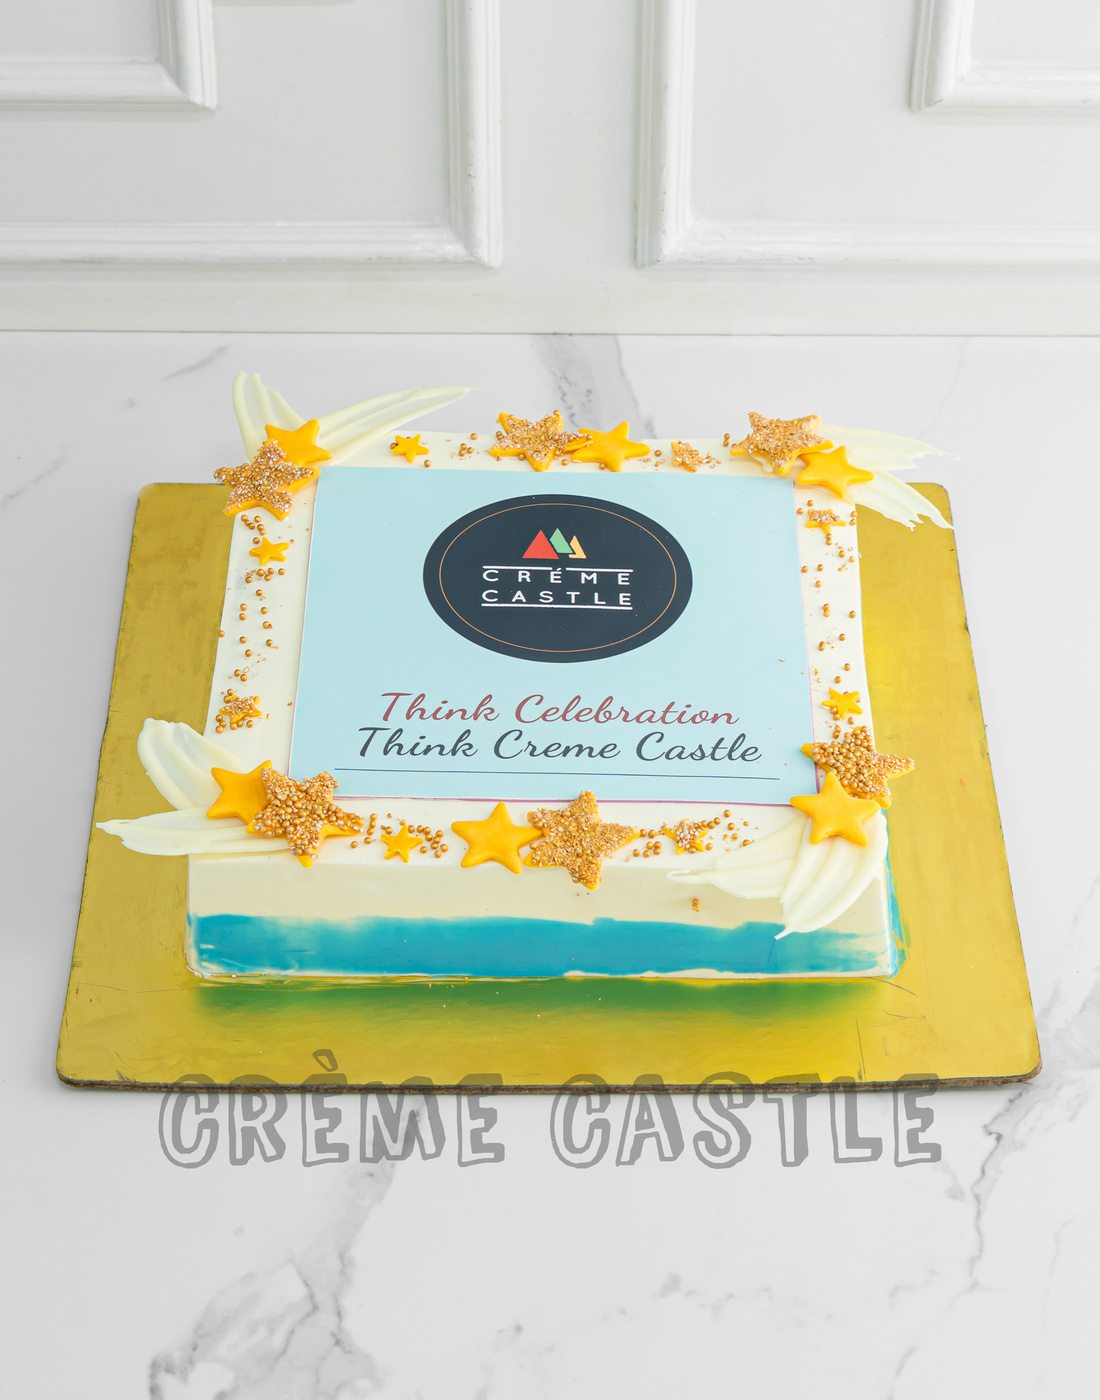 Classic Corporate Anniversary Cake